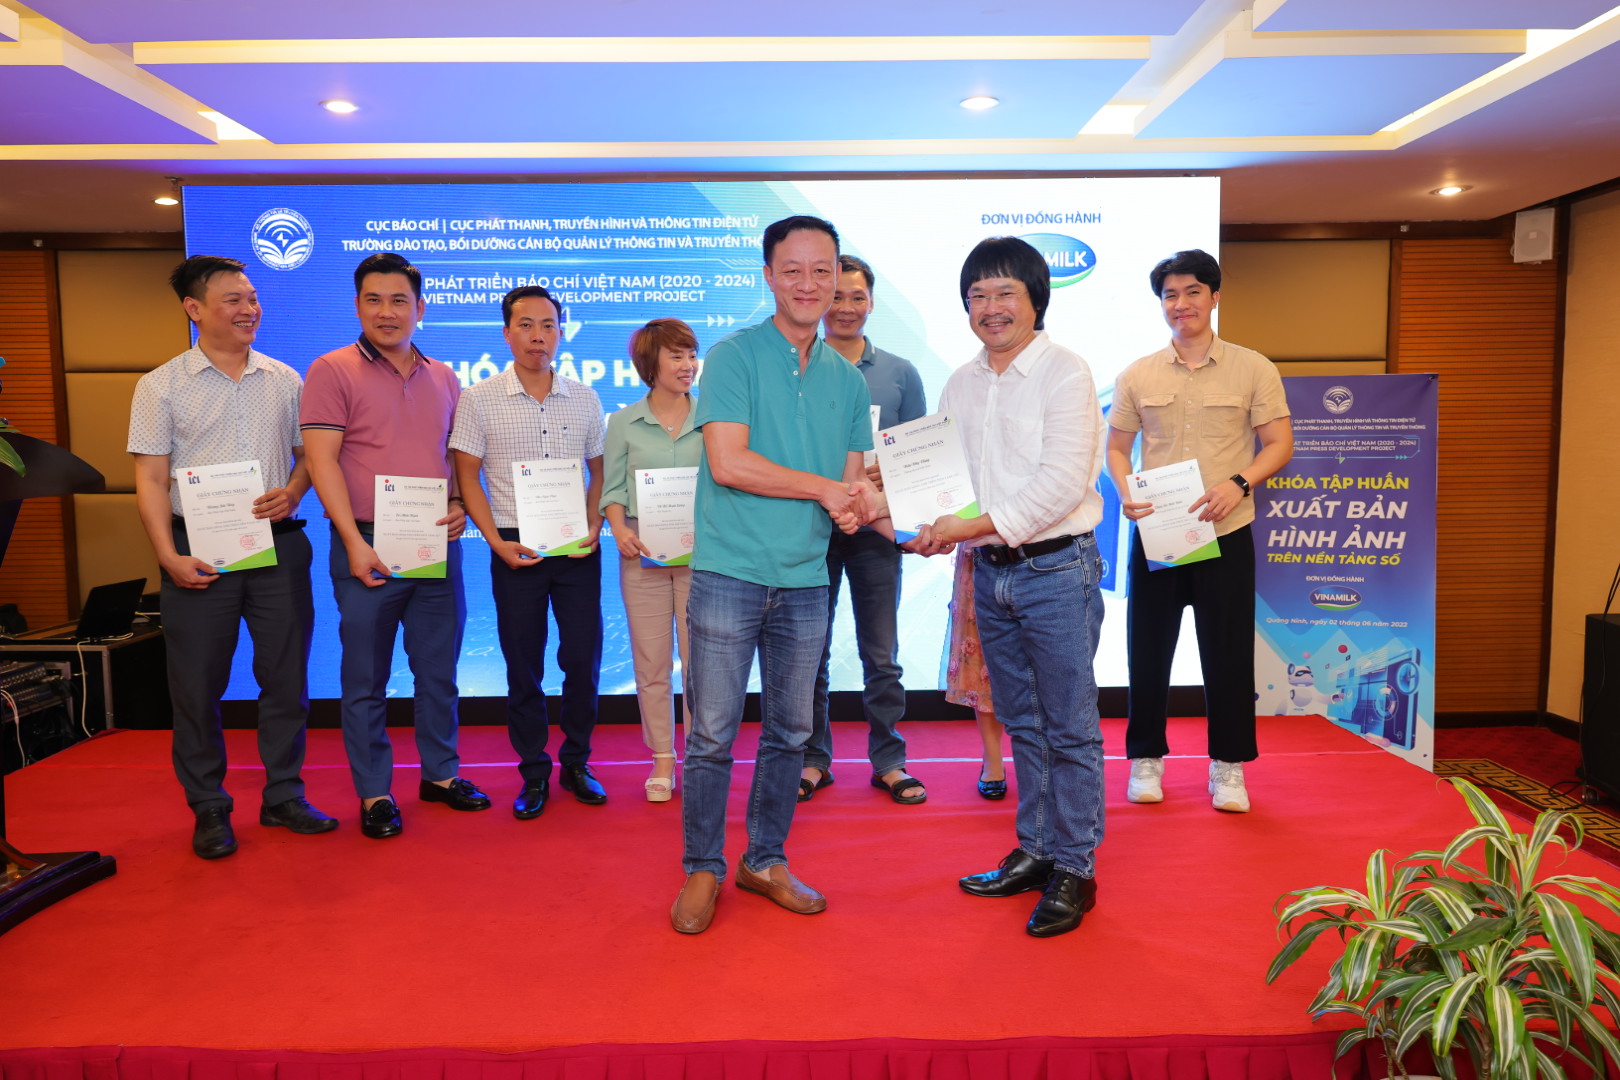 Dự án “Phát triển báo chí Việt Nam” tổ chức khóa tập huấn “Xuất bản hình ảnh trên nền tảng số” - Ảnh 7.